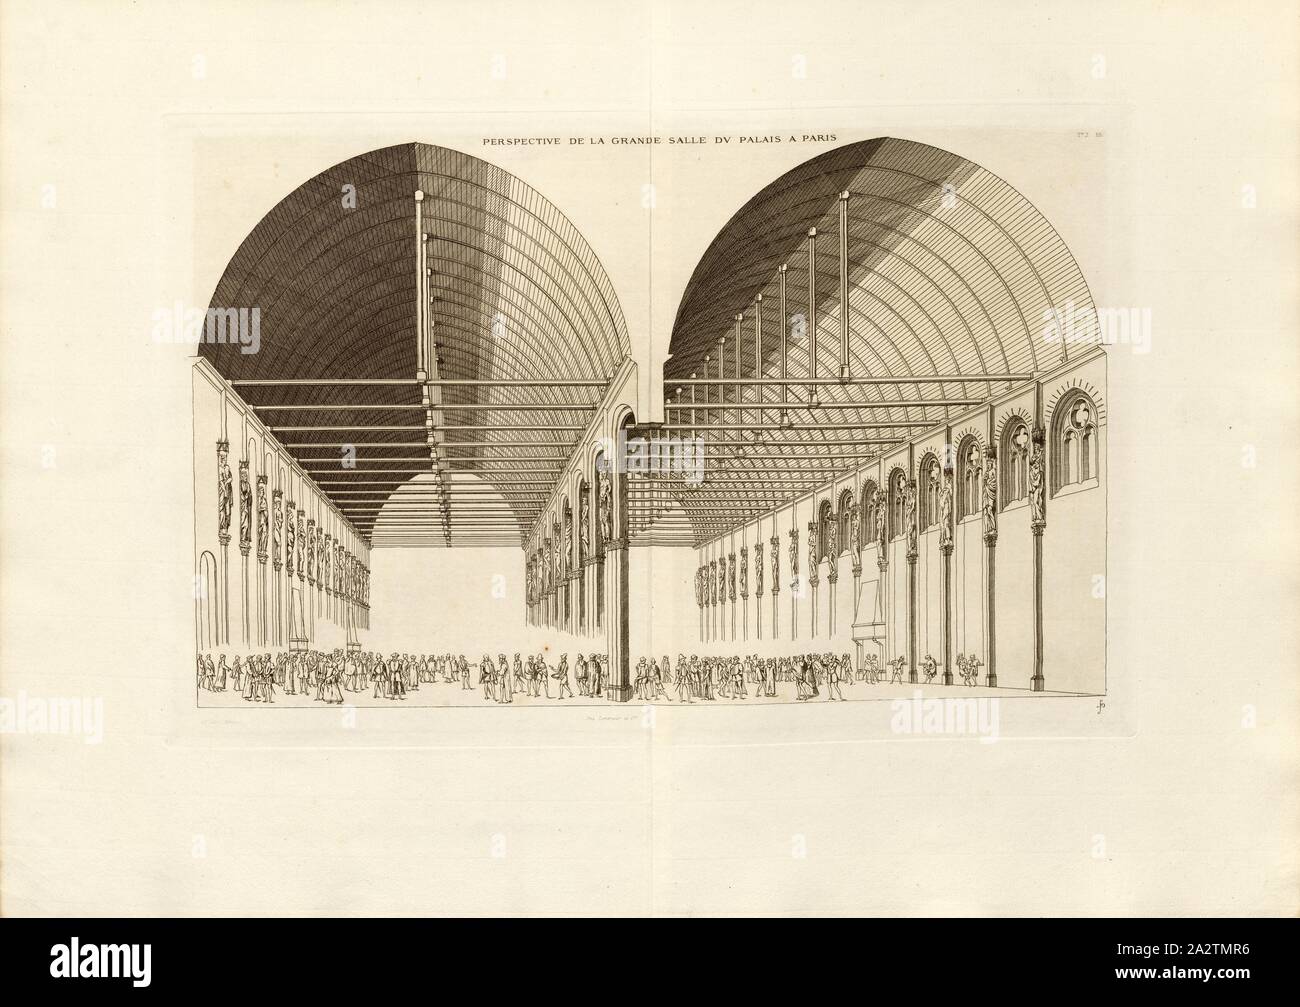 Perspective of the Great Palace Hall in Paris, Grand Salle at the Palais de la Cite in Paris, Signed: FD; Imp. Lemercier et Cie, A. Lévy (ed.), Fig. 66, T. 2. 65, Cerceau, Jacques Androuet du (del.); Faure-Dujarric, Pierre-Lucien (sc.); Lemercier (imp.); Levy, A. (ed.), 1868, Jacques Androuet du Cerceau; Hippolyte A. Destailleur: Les plus excellents bastiments de France. Paris: A. Lévy, Libraire-Editeur, M DCCC LXVIII - M DCCC LXX. [1868-1870 Stock Photo